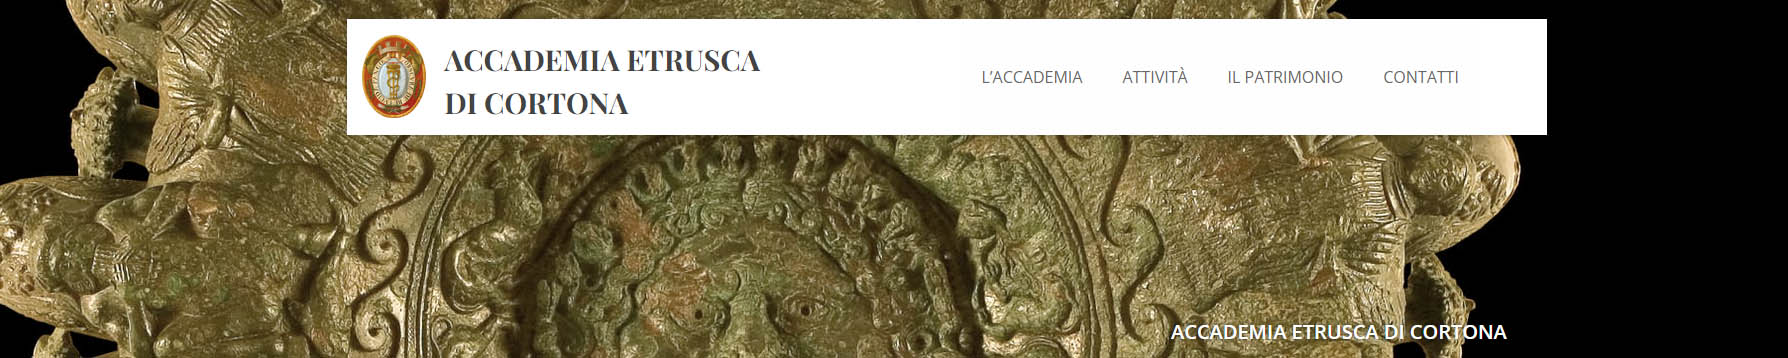 sito web Accademia Etrusca di Cortona, Annuario.